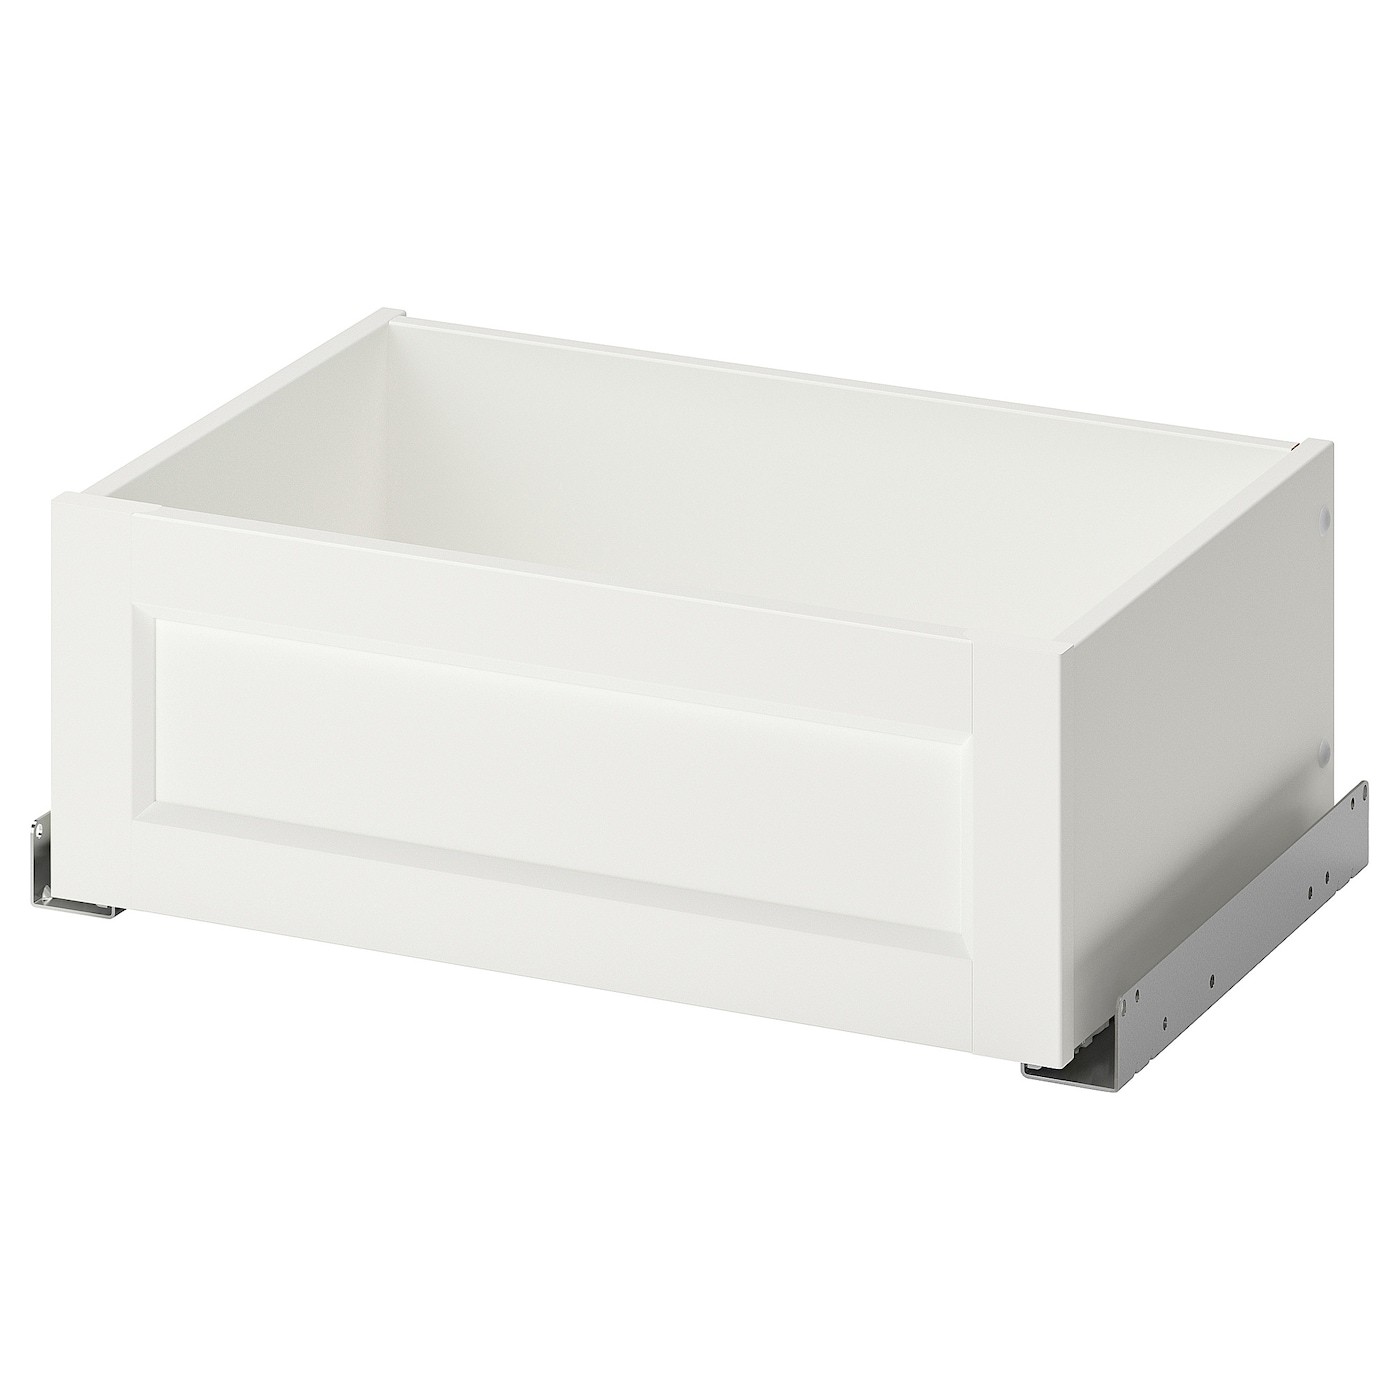 IKEA KOMPLEMENT КОМПЛЕМЕНТ Шухляда з фронтальною панеллю, білий, 50x35 cм 80446592 804.465.92